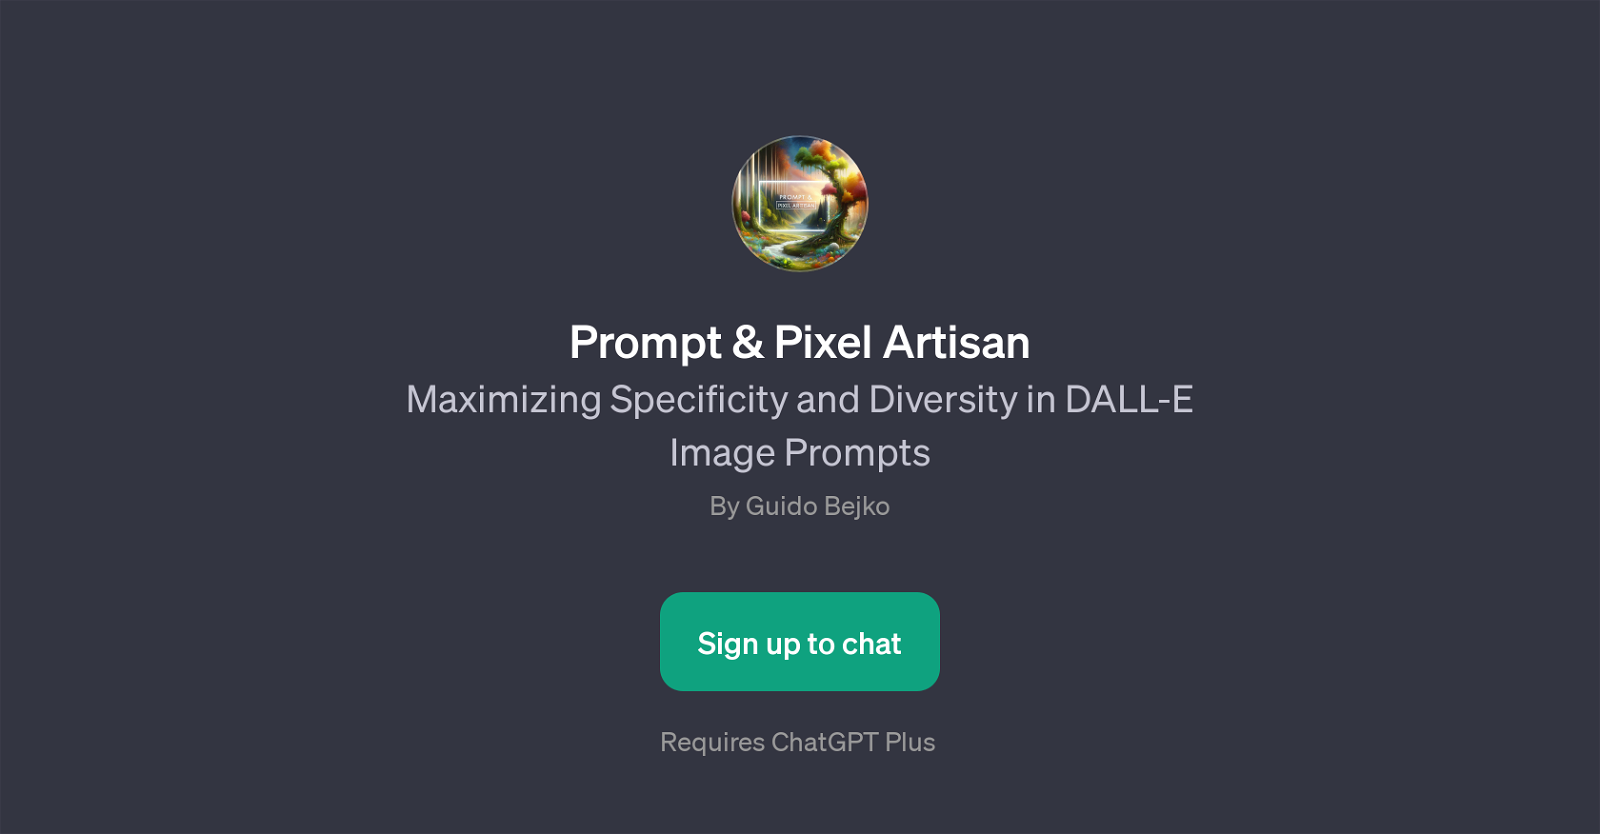 Prompt & Pixel Artisan website